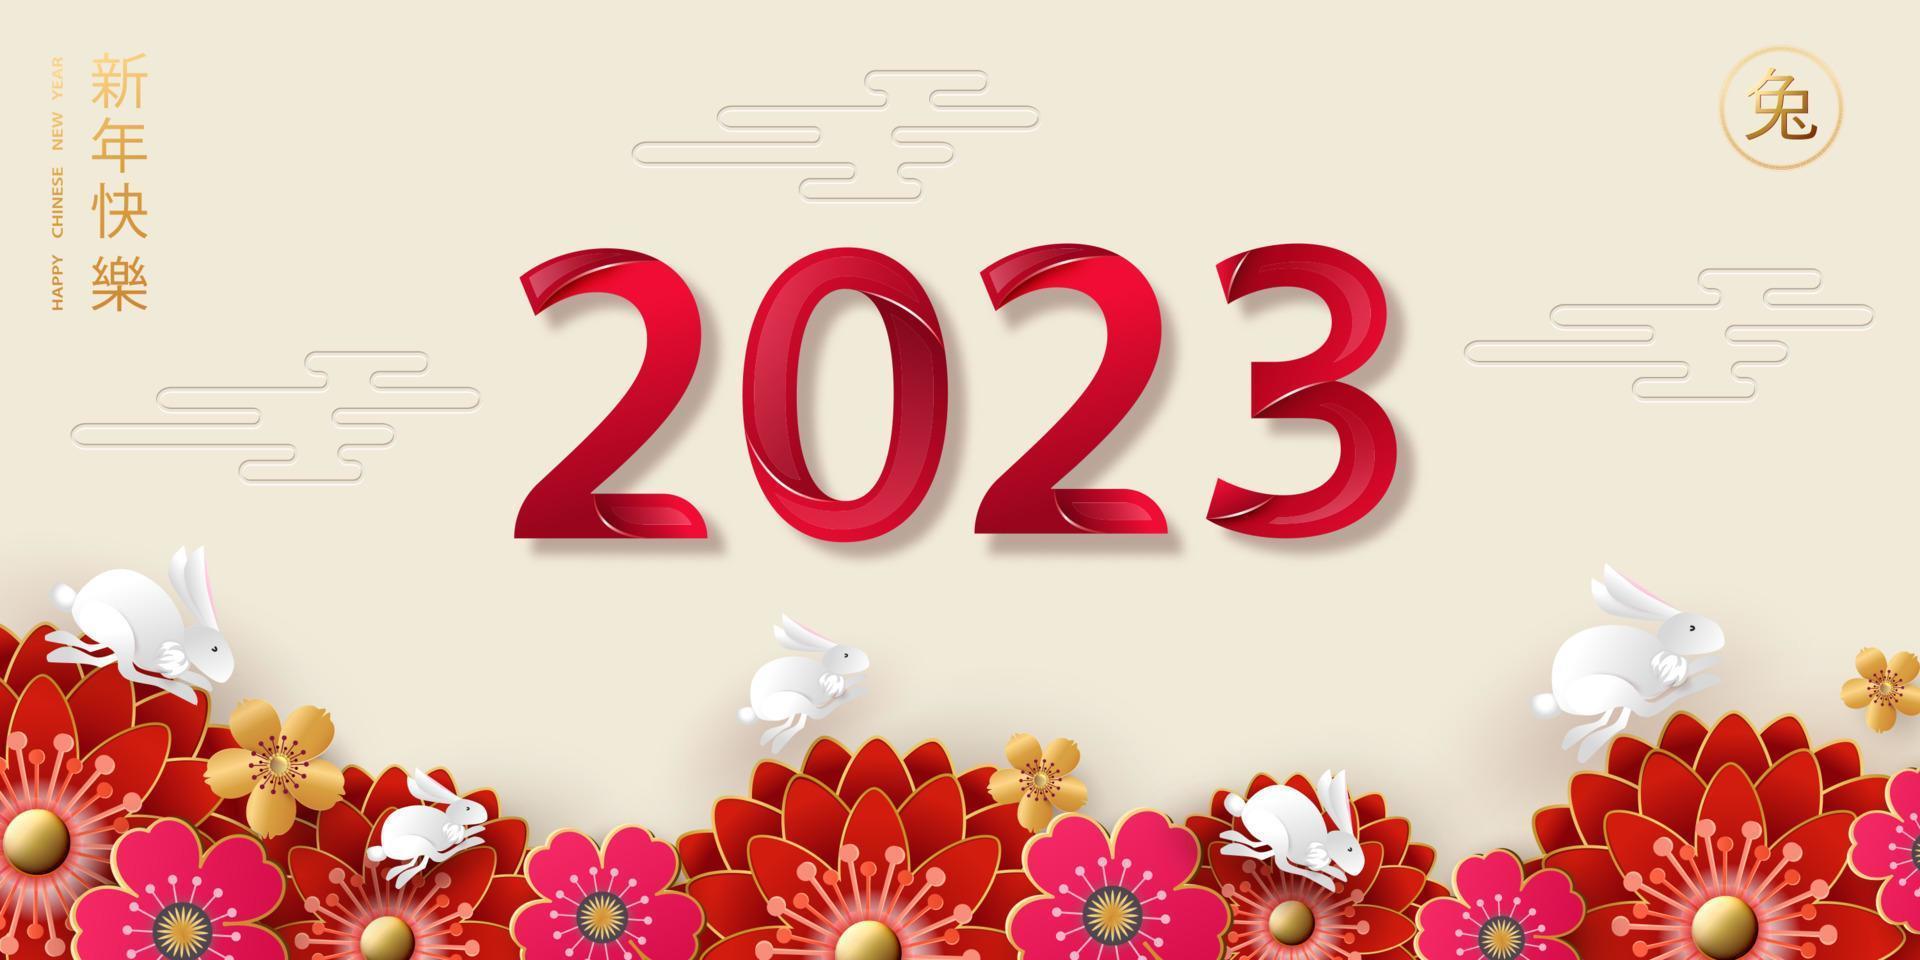 feliz ano novo chinês 2023, ano do coelho. tradução do chinês - feliz ano novo, signo de coelho. padrões tradicionais, crisântemos e coelhos saltadores. cartão de férias, banner, panfleto. vetor